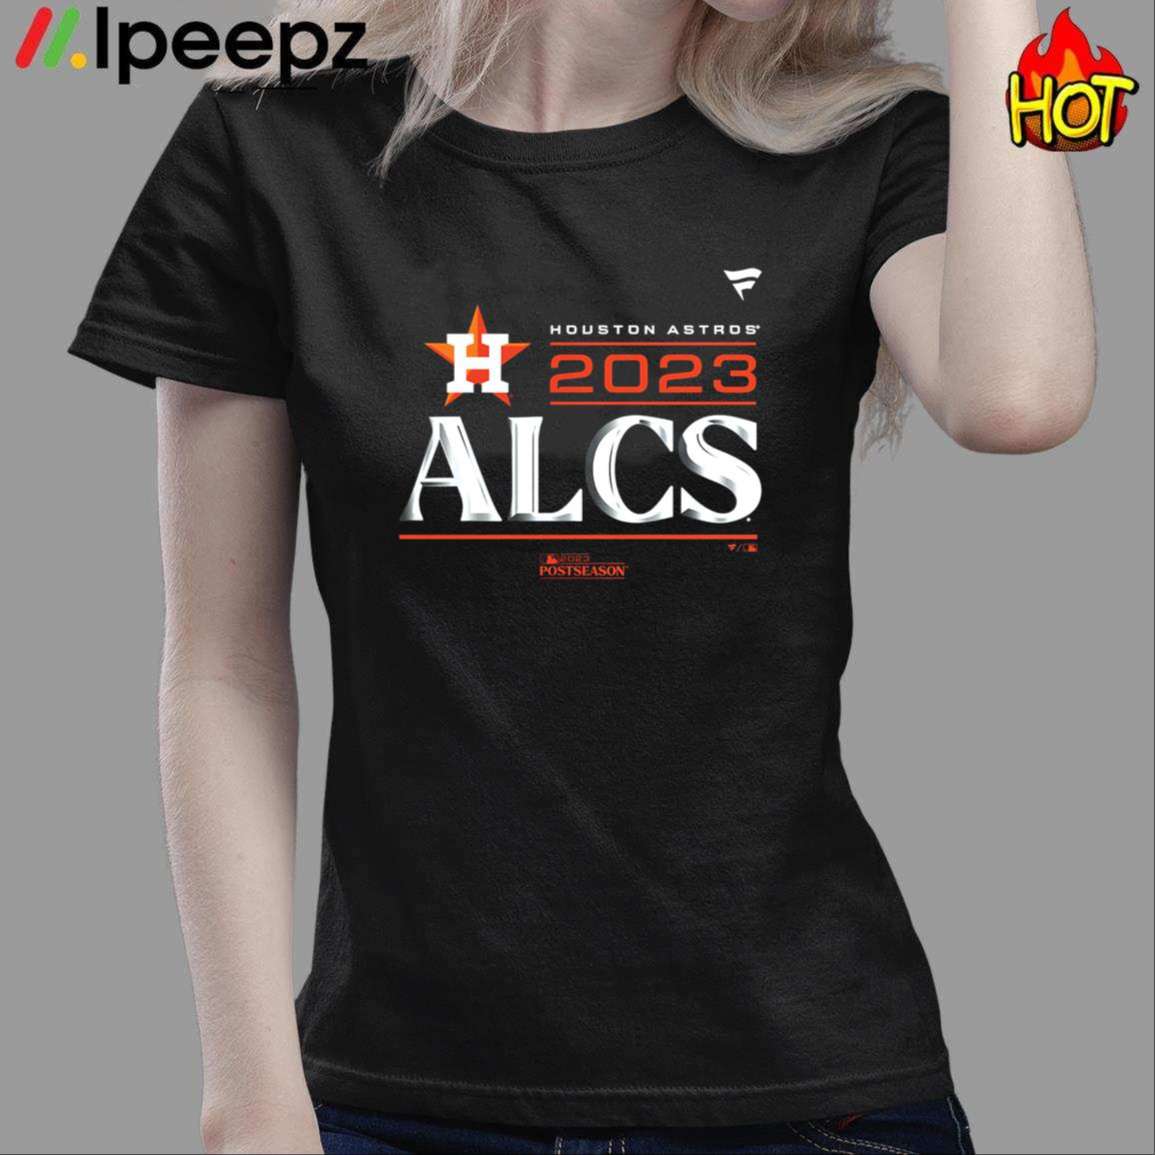 Ipeepz Houston Astros 2023 alcs Shirt